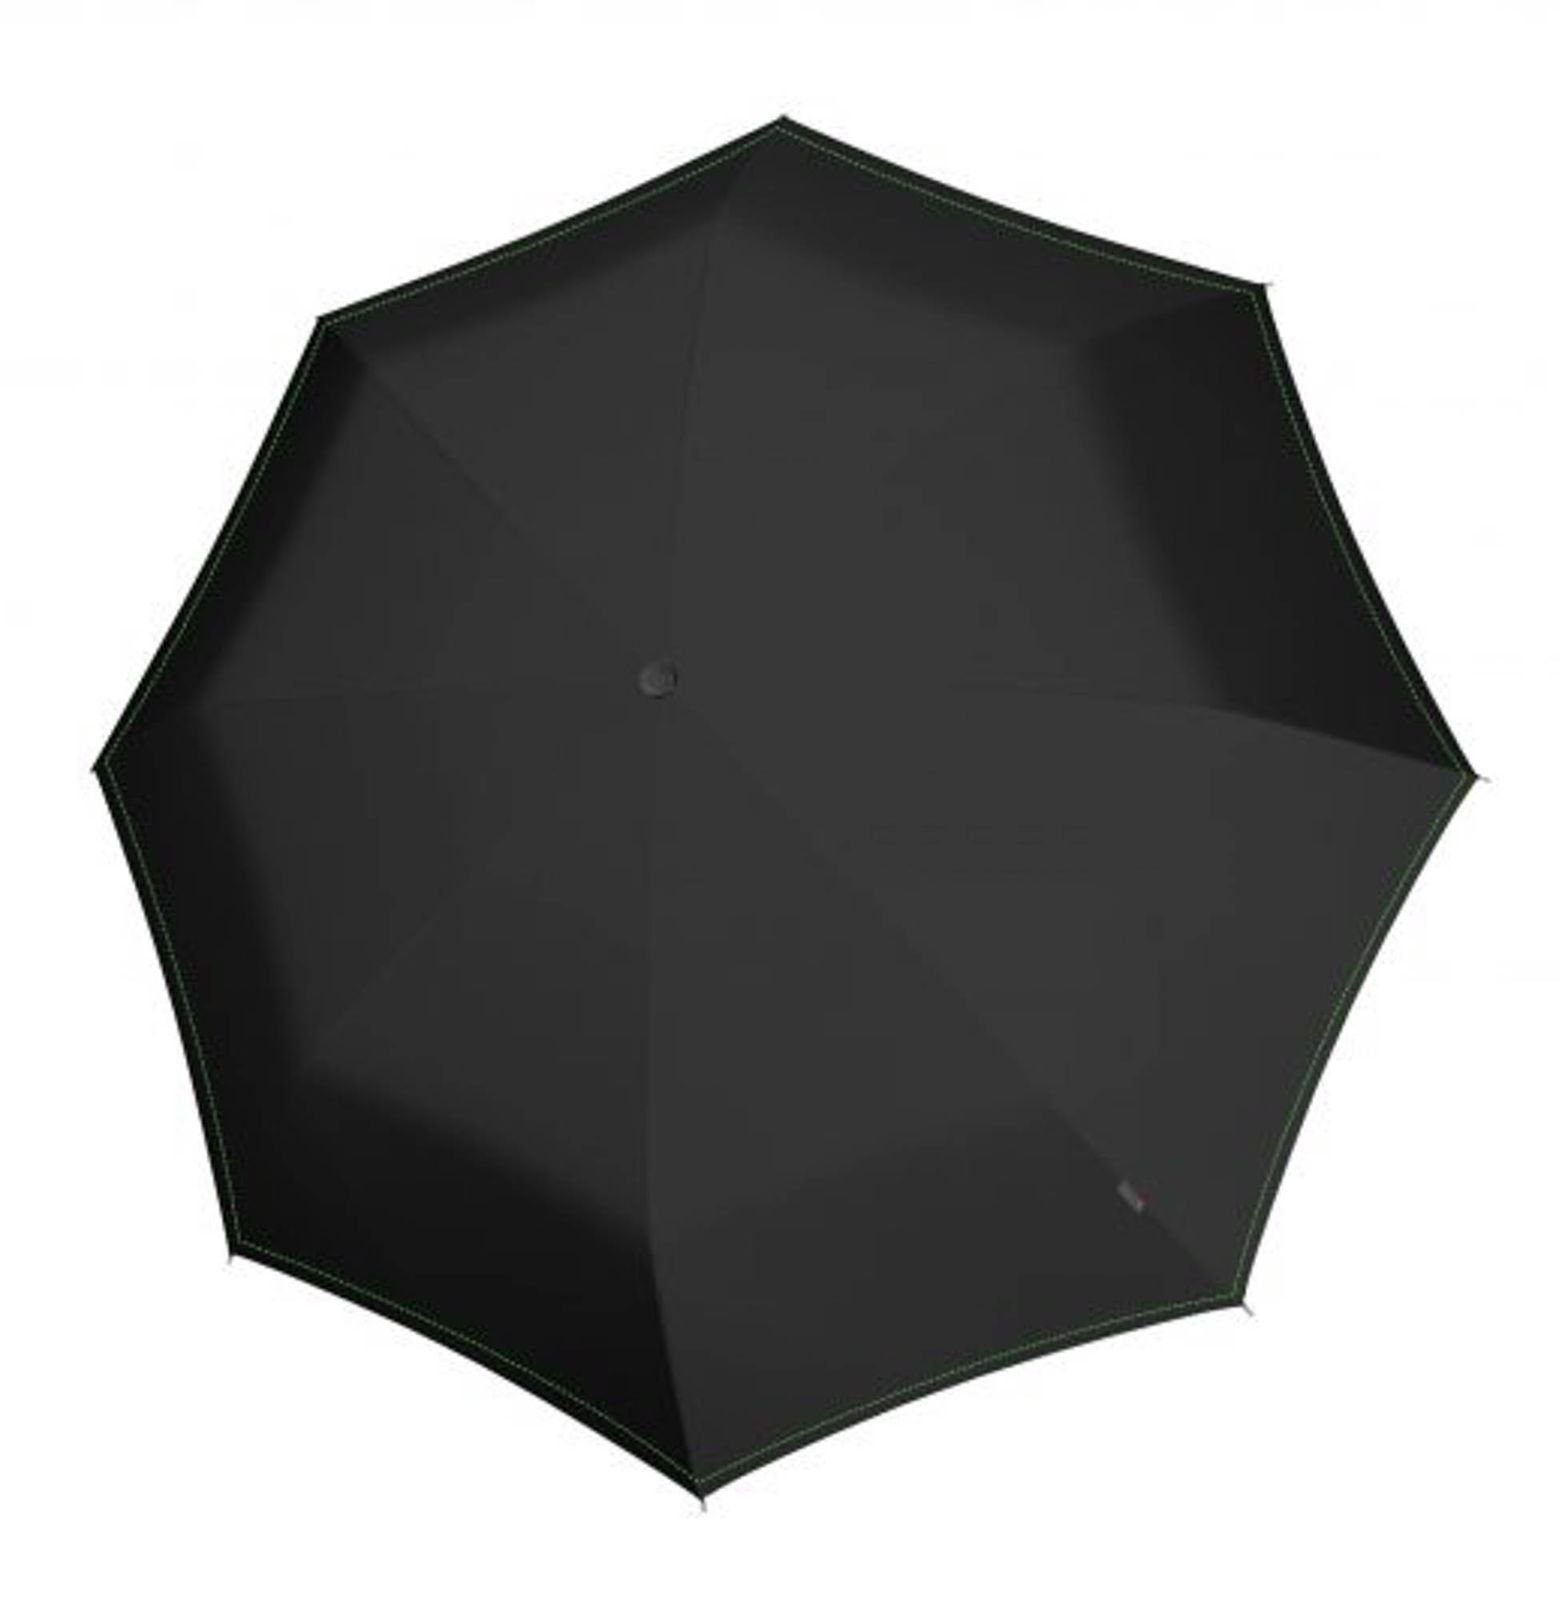 Von der Marke direkt geführter Laden Knirps® Stockregenschirm U.900 Neon Black